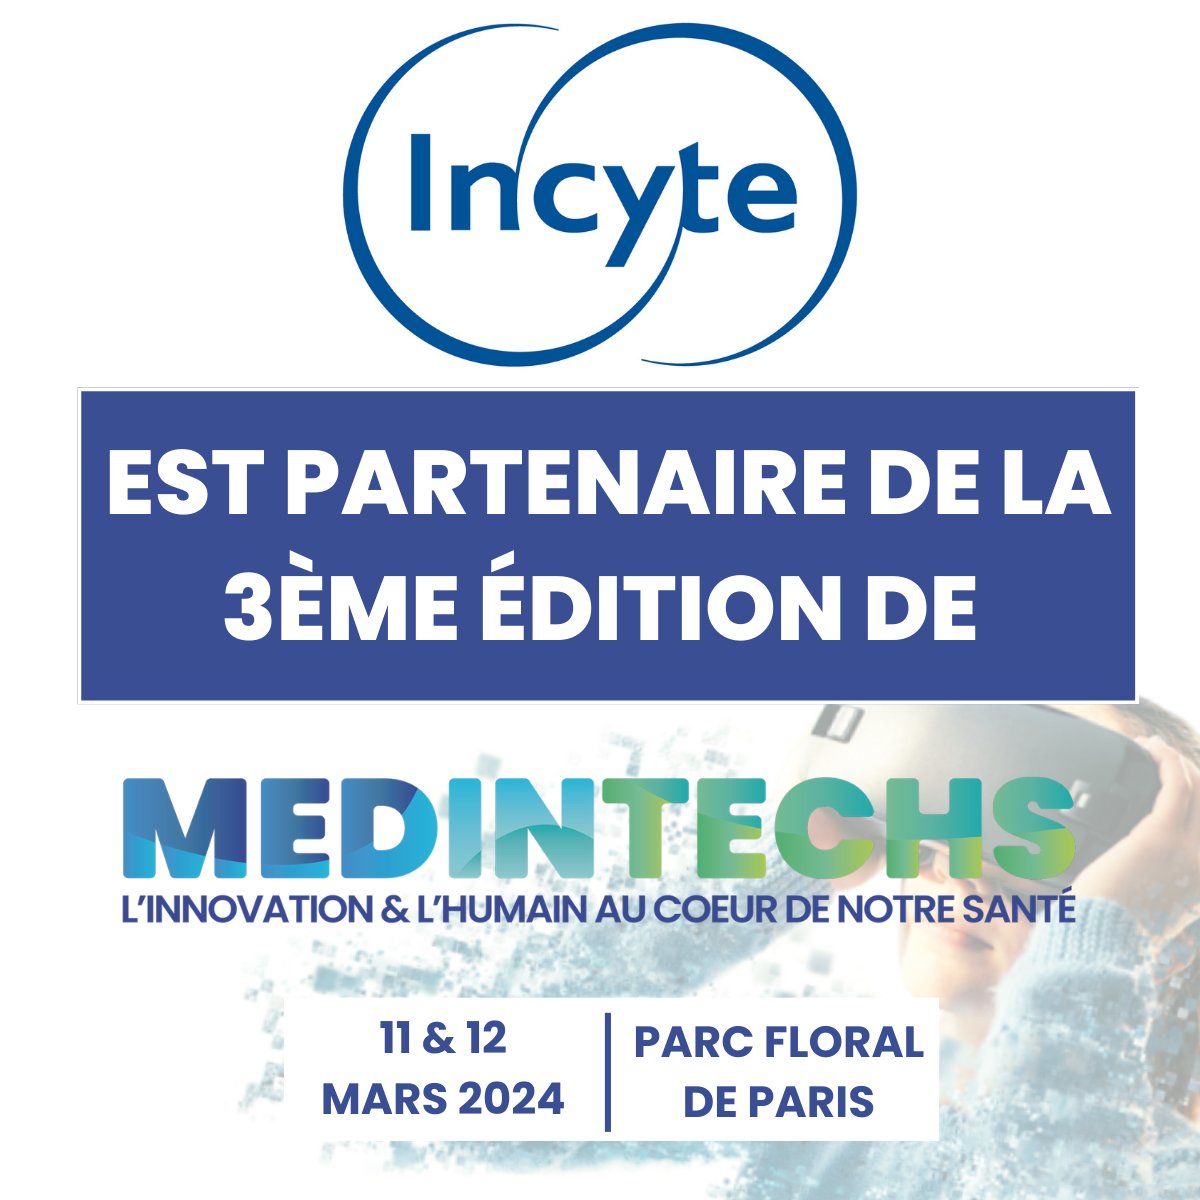 ✨ Nous sommes ravis d'annoncer notre partenariat avec @Incyte ! 🛑 Conférence à ne pas manquer : 'INNOVATION, VIE SOCIALE ET SANTÉ MENTALE » les 11 & 12 mars prochains au salon MedInTechs, Paris.